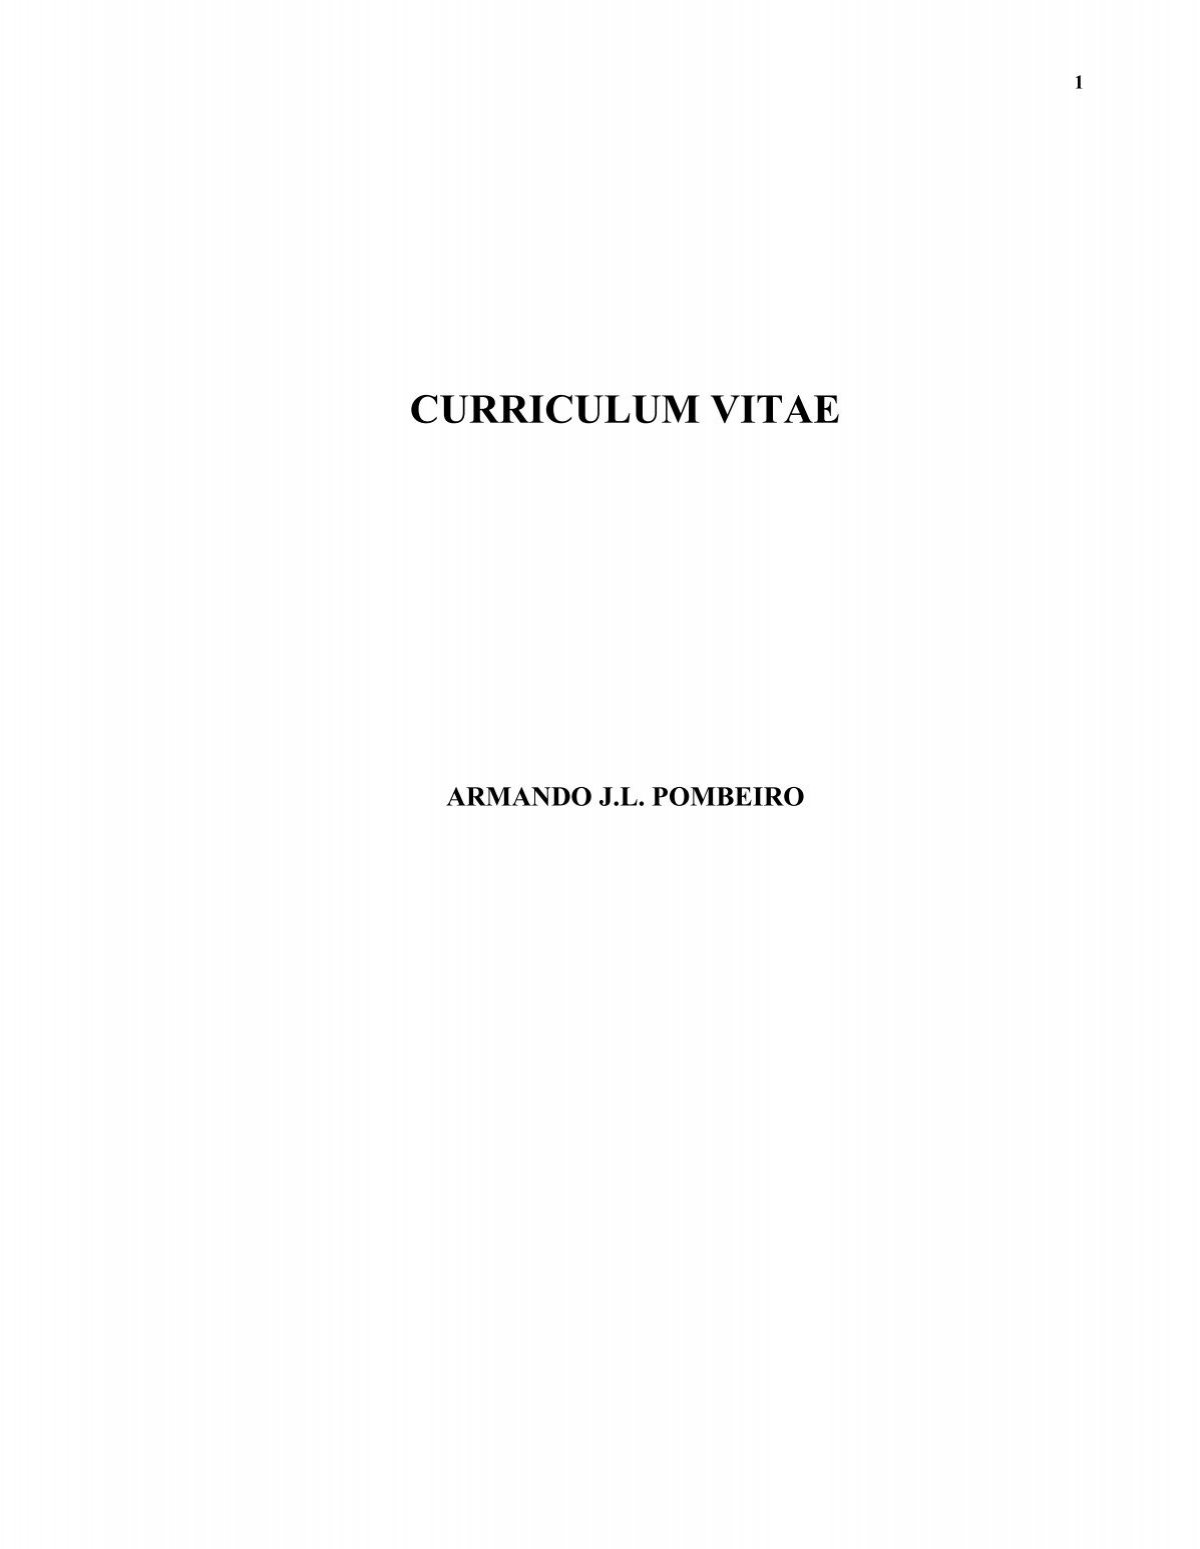 Detailed Curriculum Vitae - Centro de QuÃmica Estrutural